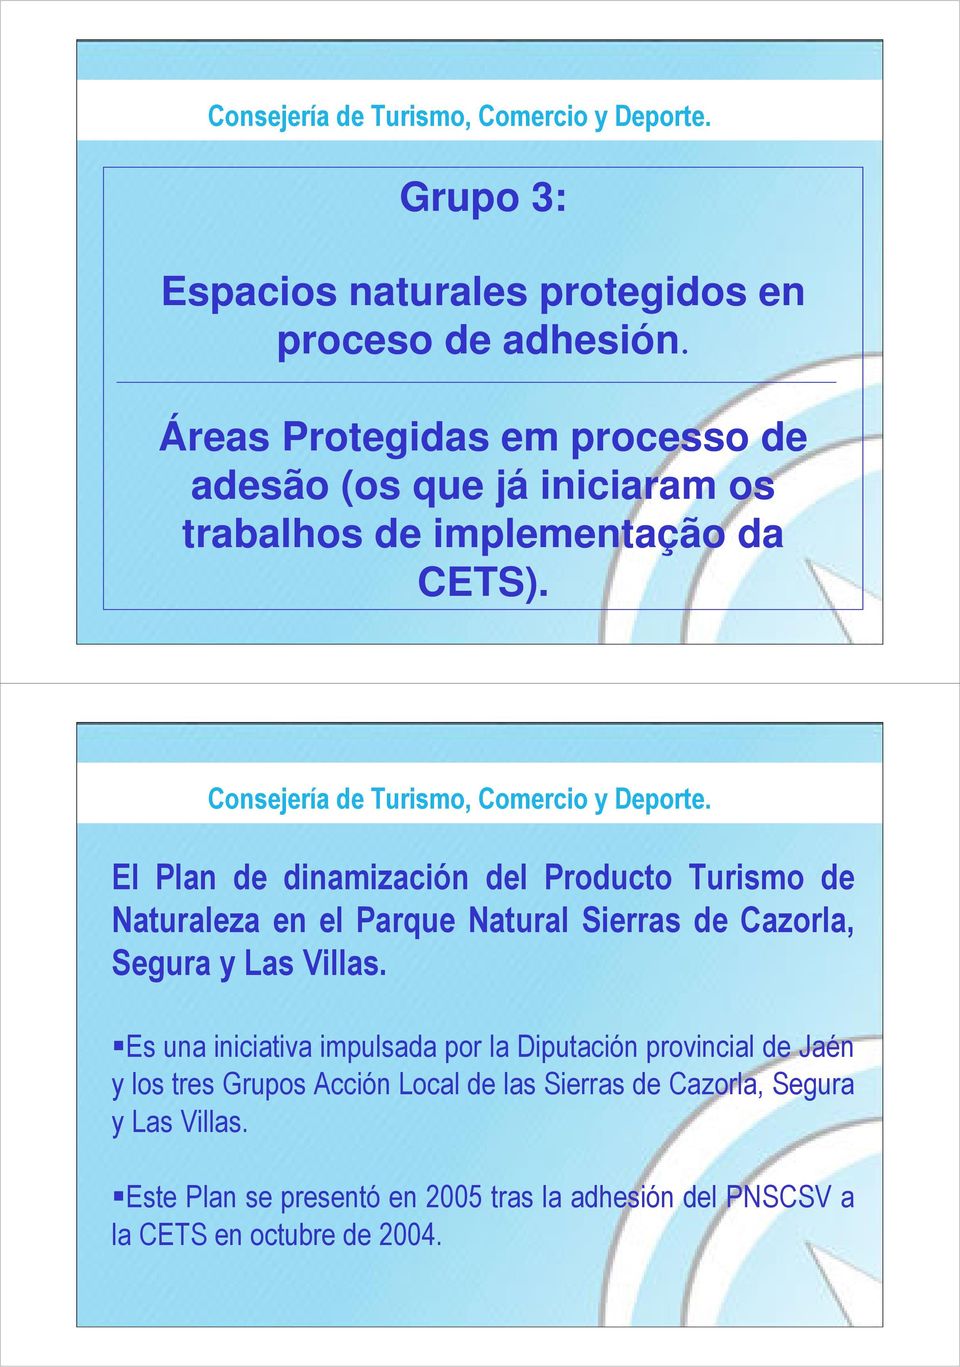 El Plan de dinamización del Producto Turismo de Naturaleza en el Parque Natural Sierras de Cazorla, Segura y Las Villas.